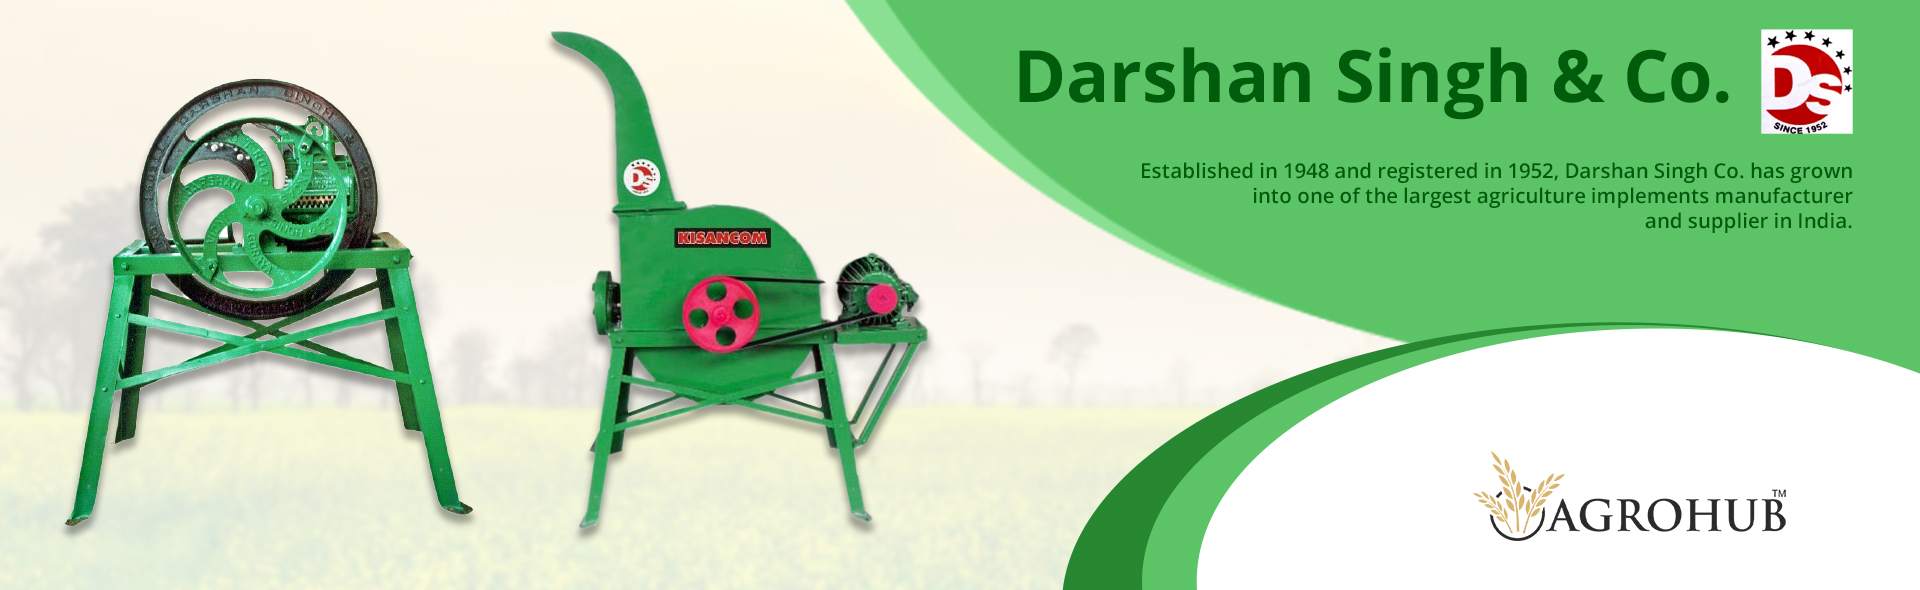 Darshan Singh & Co.